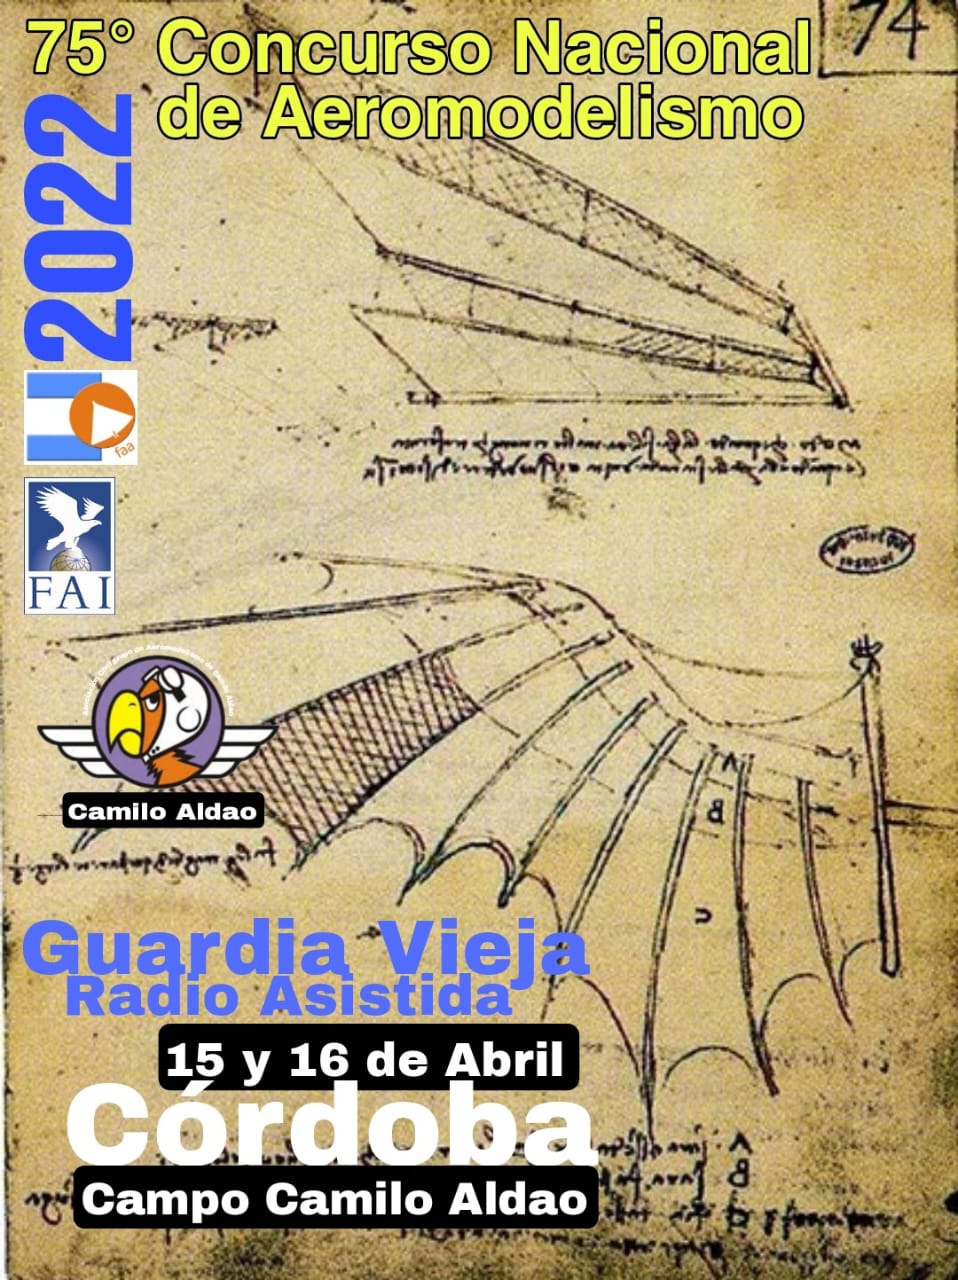 Crónica del 75° Concurso Nacional de Guardia Vieja Radio Asistida 2022 – Camilo Aldao, Córdoba